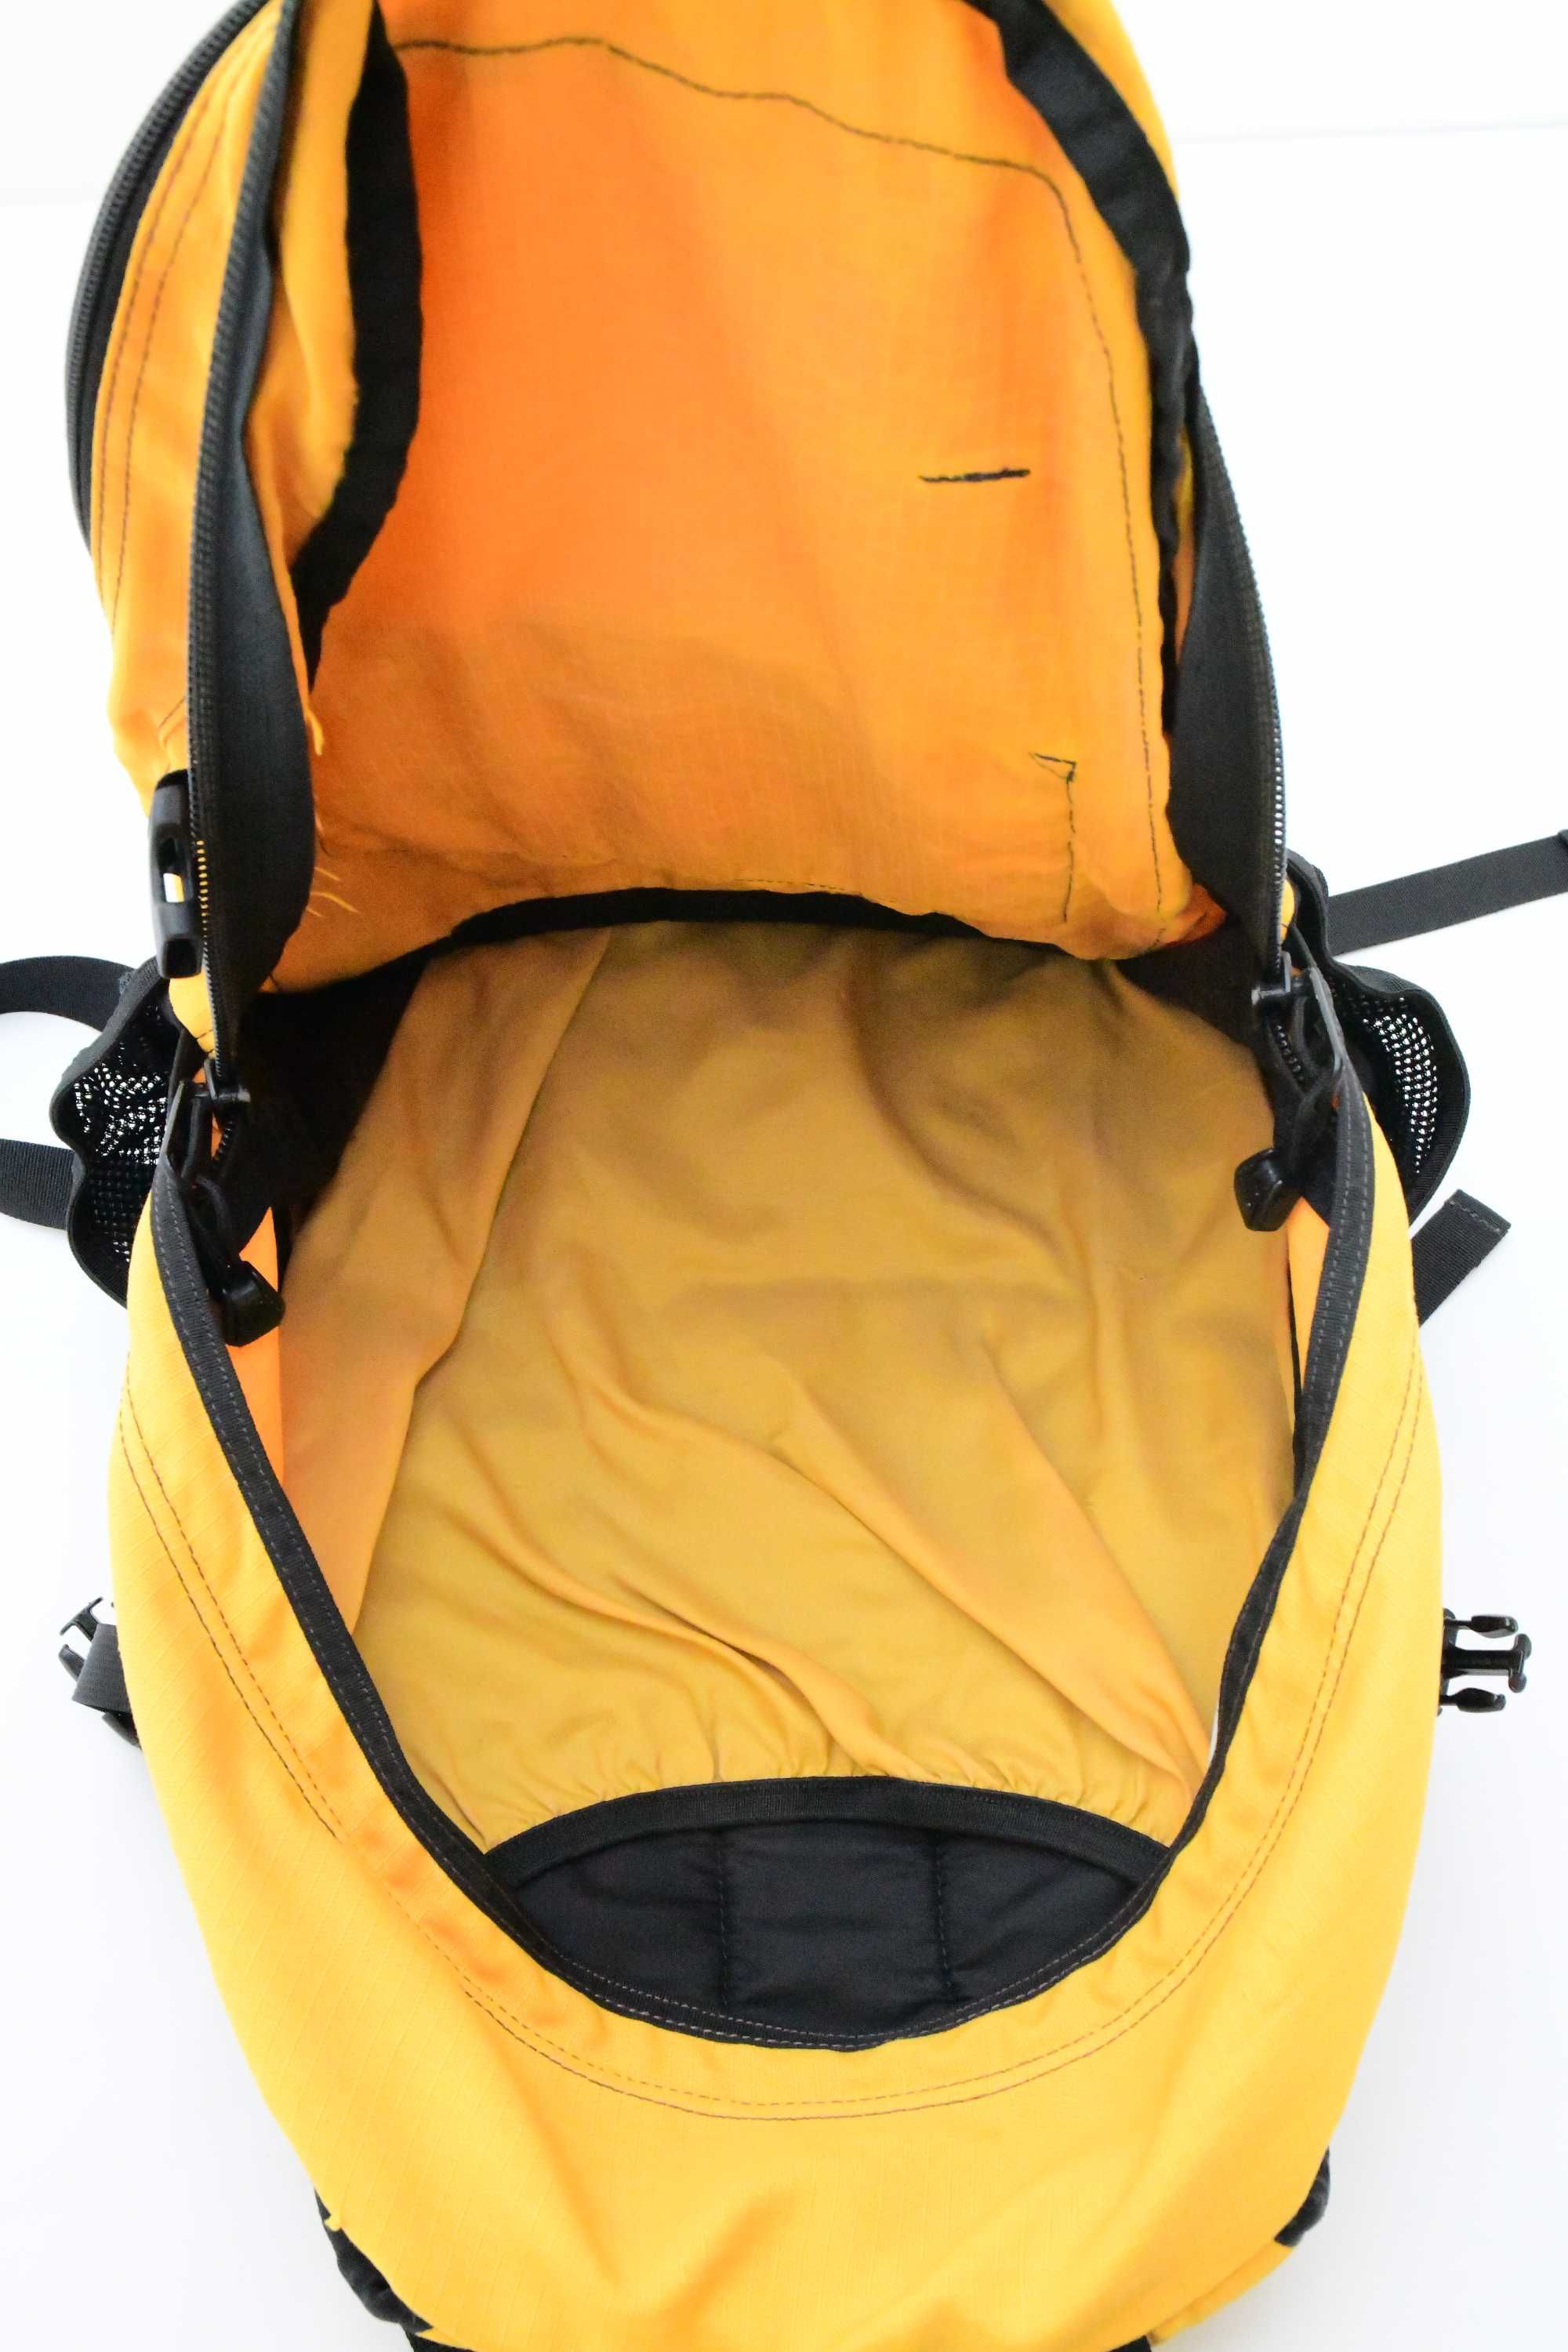 Plecak miejski (amerykański) żółty firmy EMS